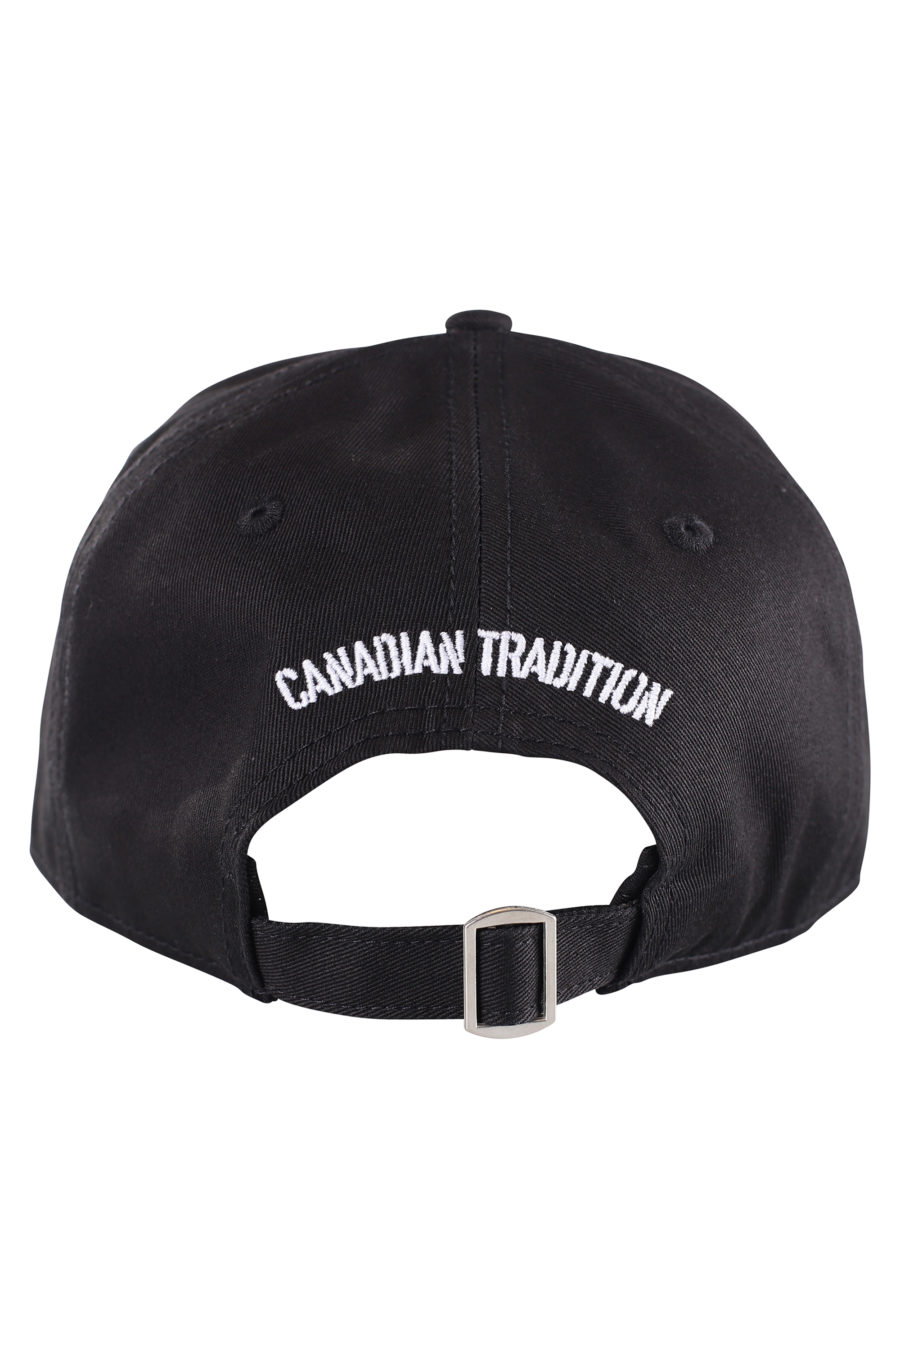 Verstellbare schwarze Kappe mit großem weißen ausgefransten Logo - IMG 9620